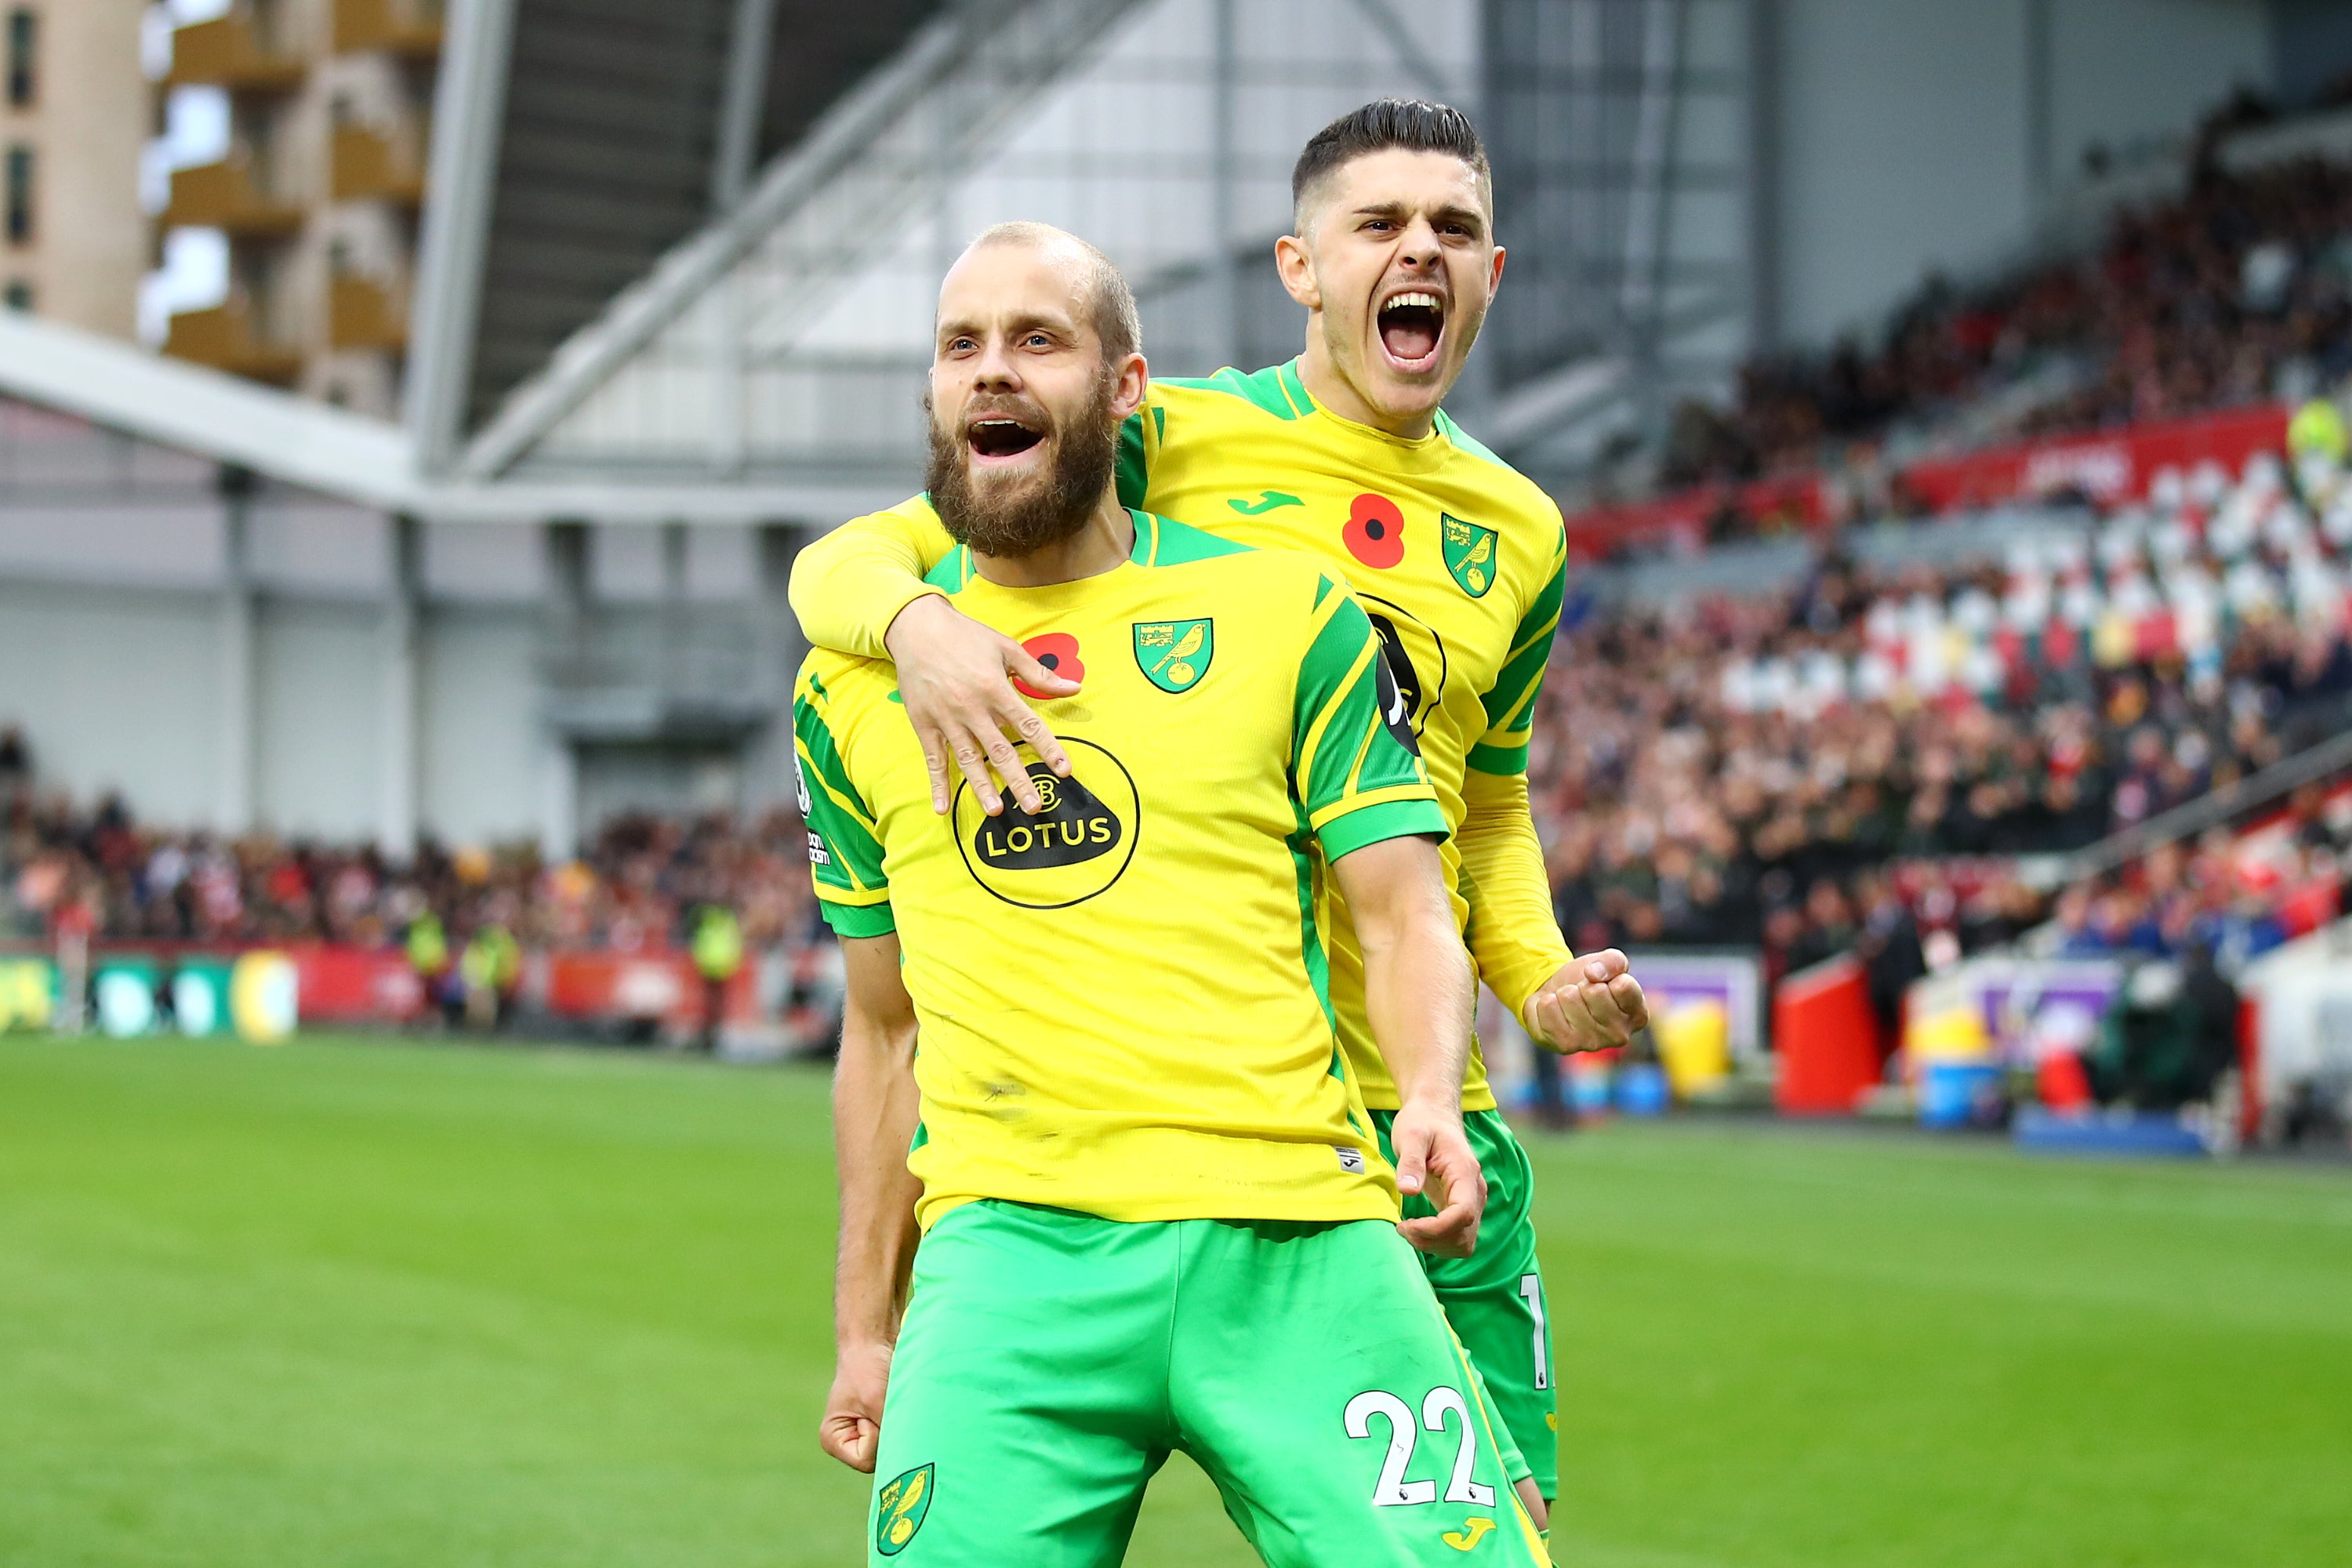 Norwich earned a first win of the season